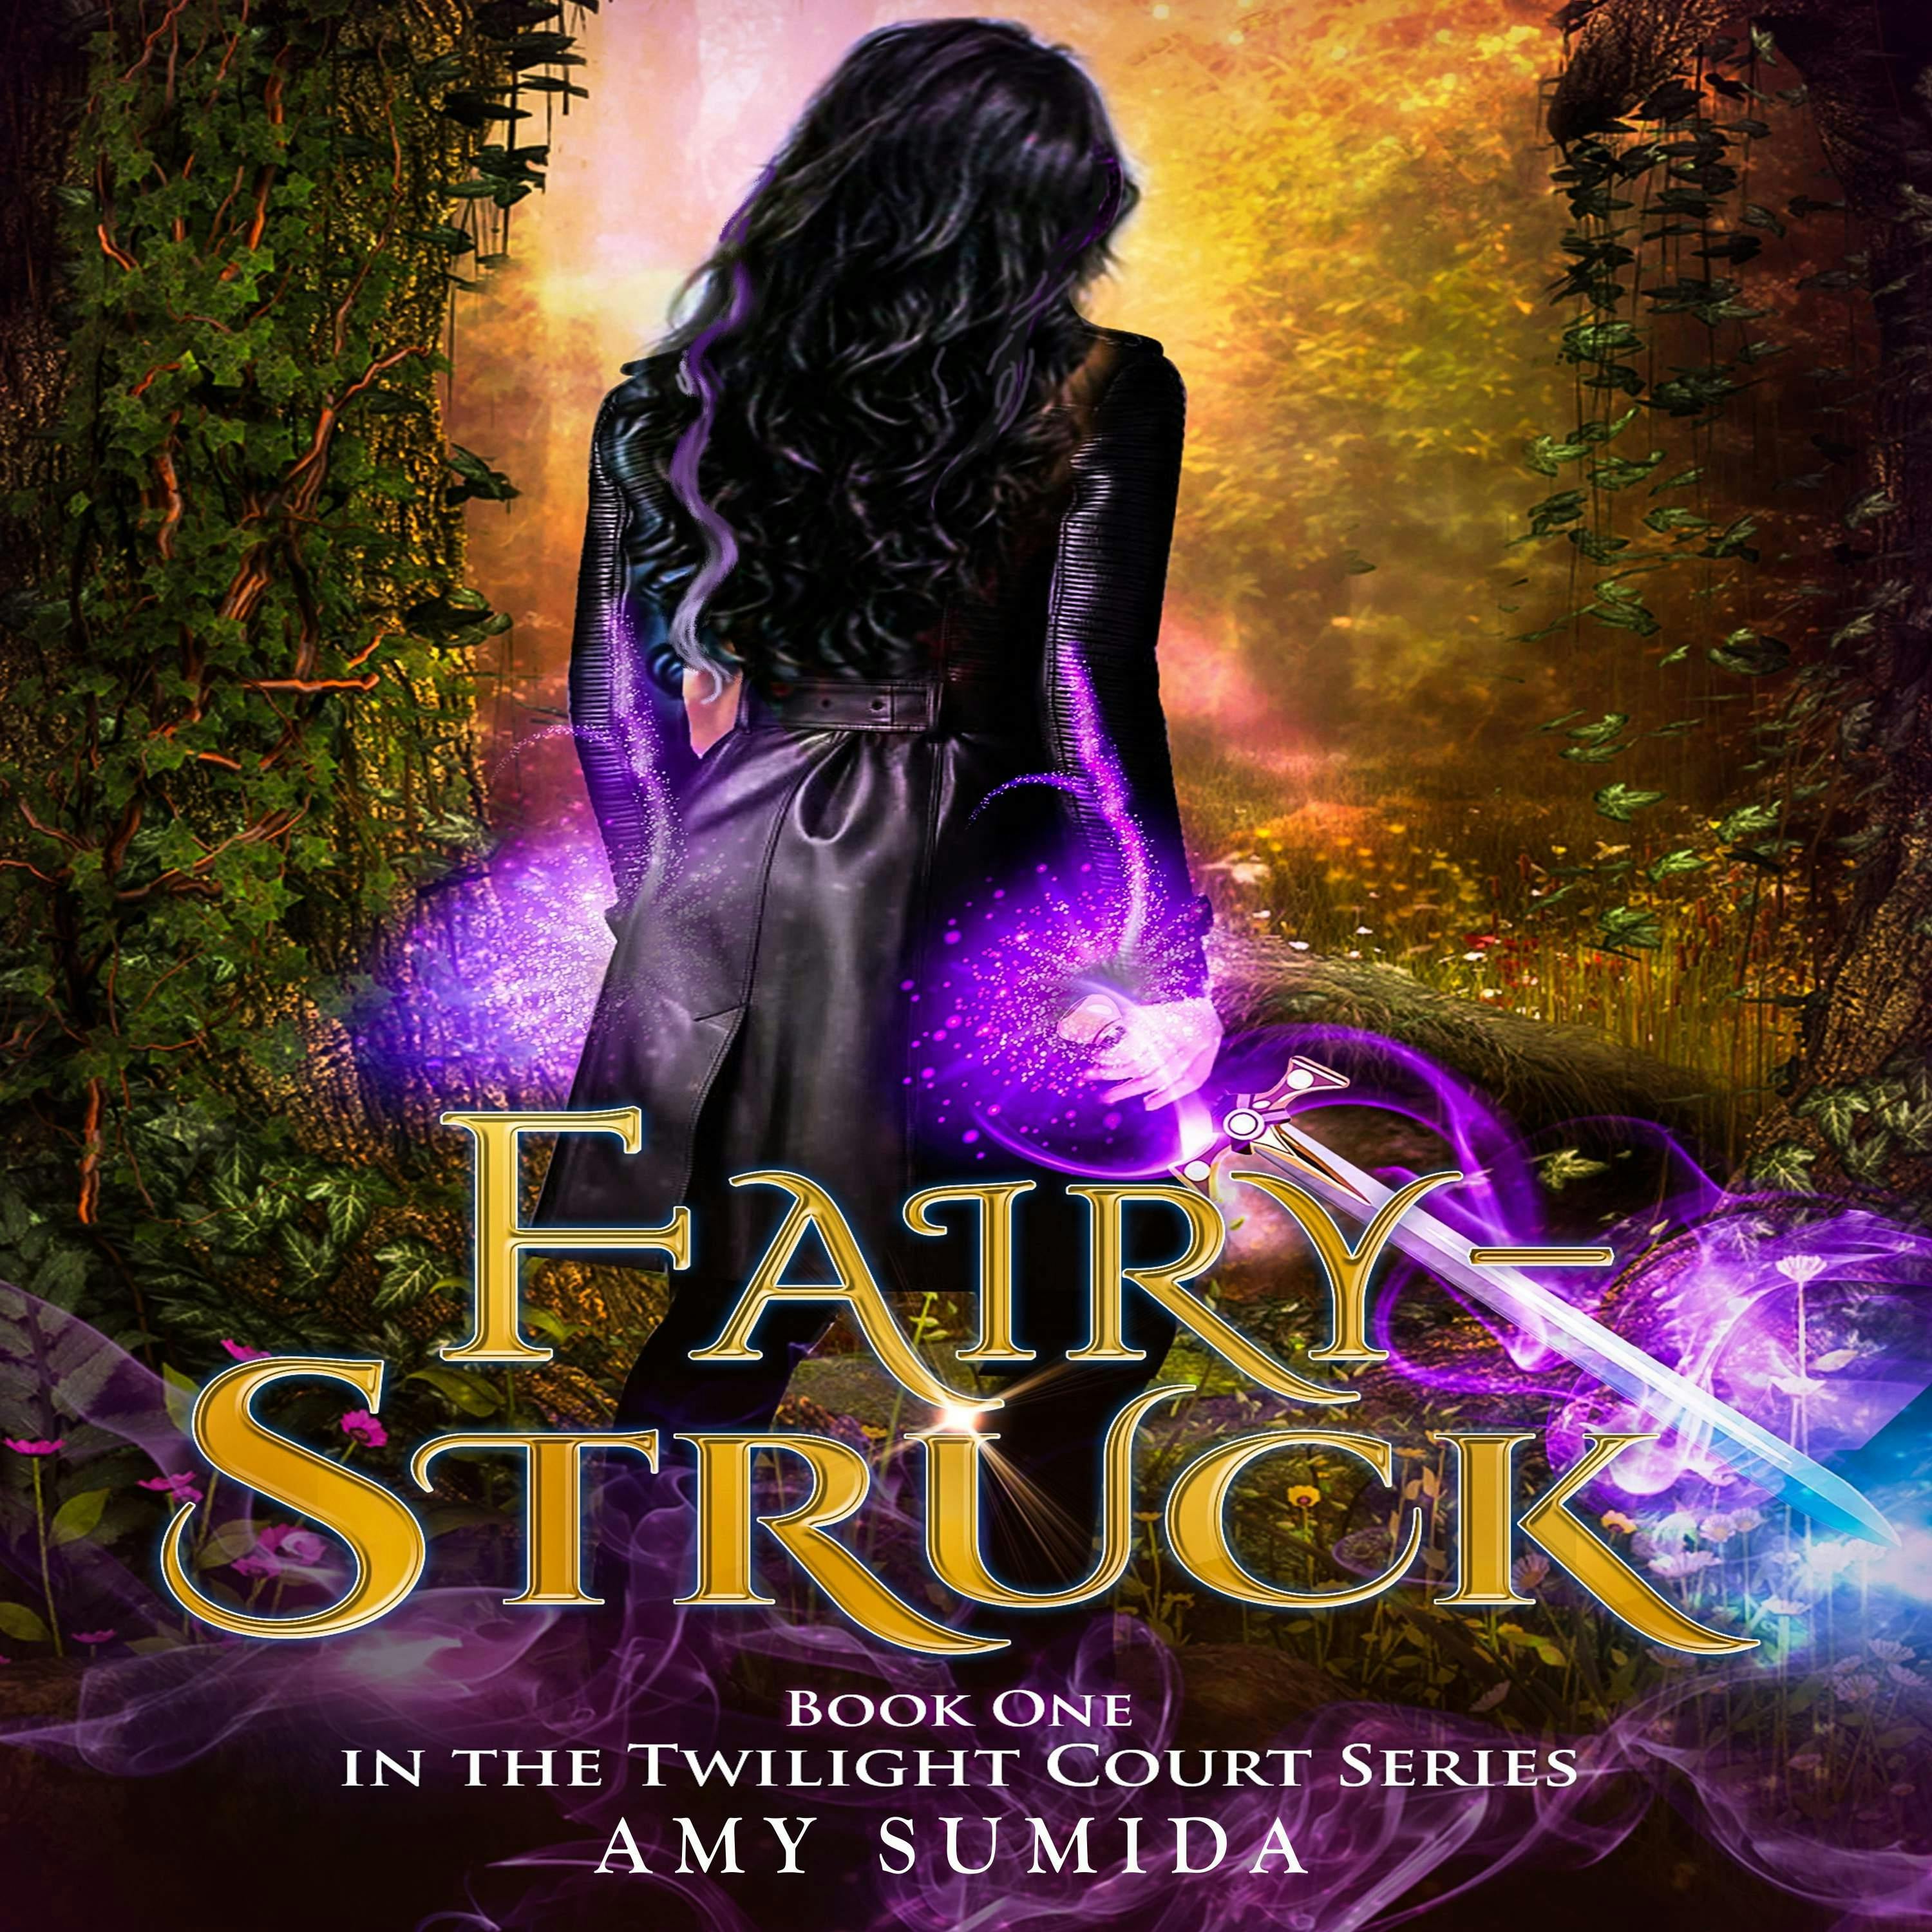 Fairy-Struck - Amy Sumida